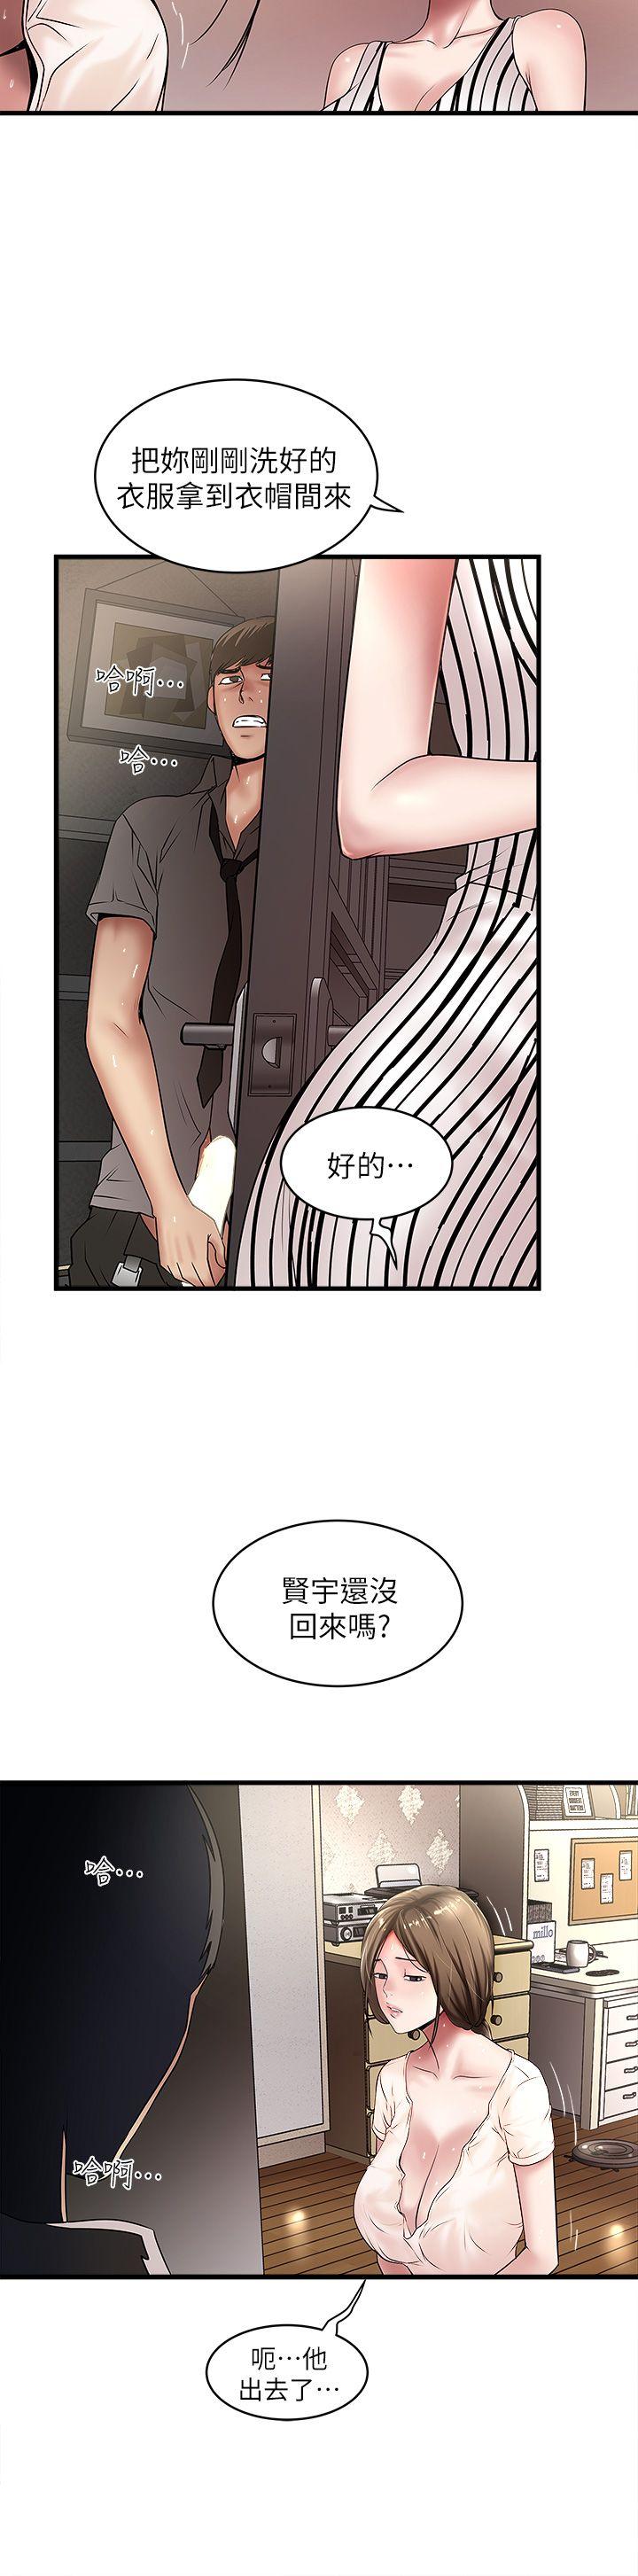 韩国污漫画 下女,初希 第20话-贤宇喜欢的安静女人 12